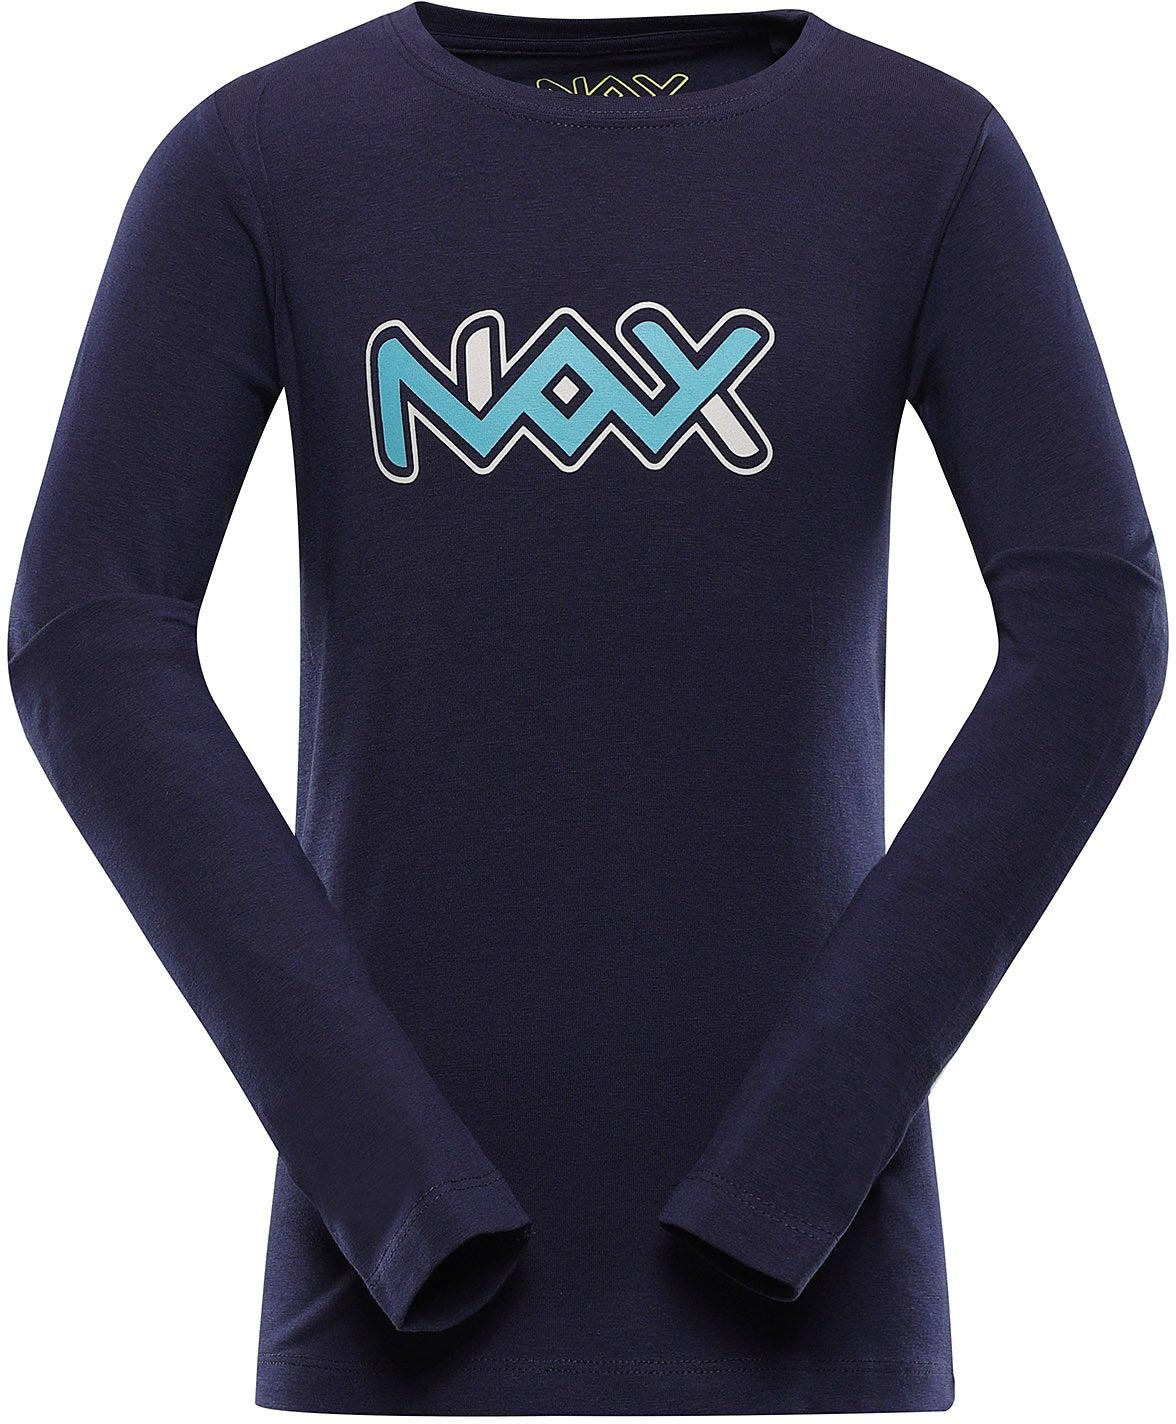 Dětské triko Nax Pralano|116-122